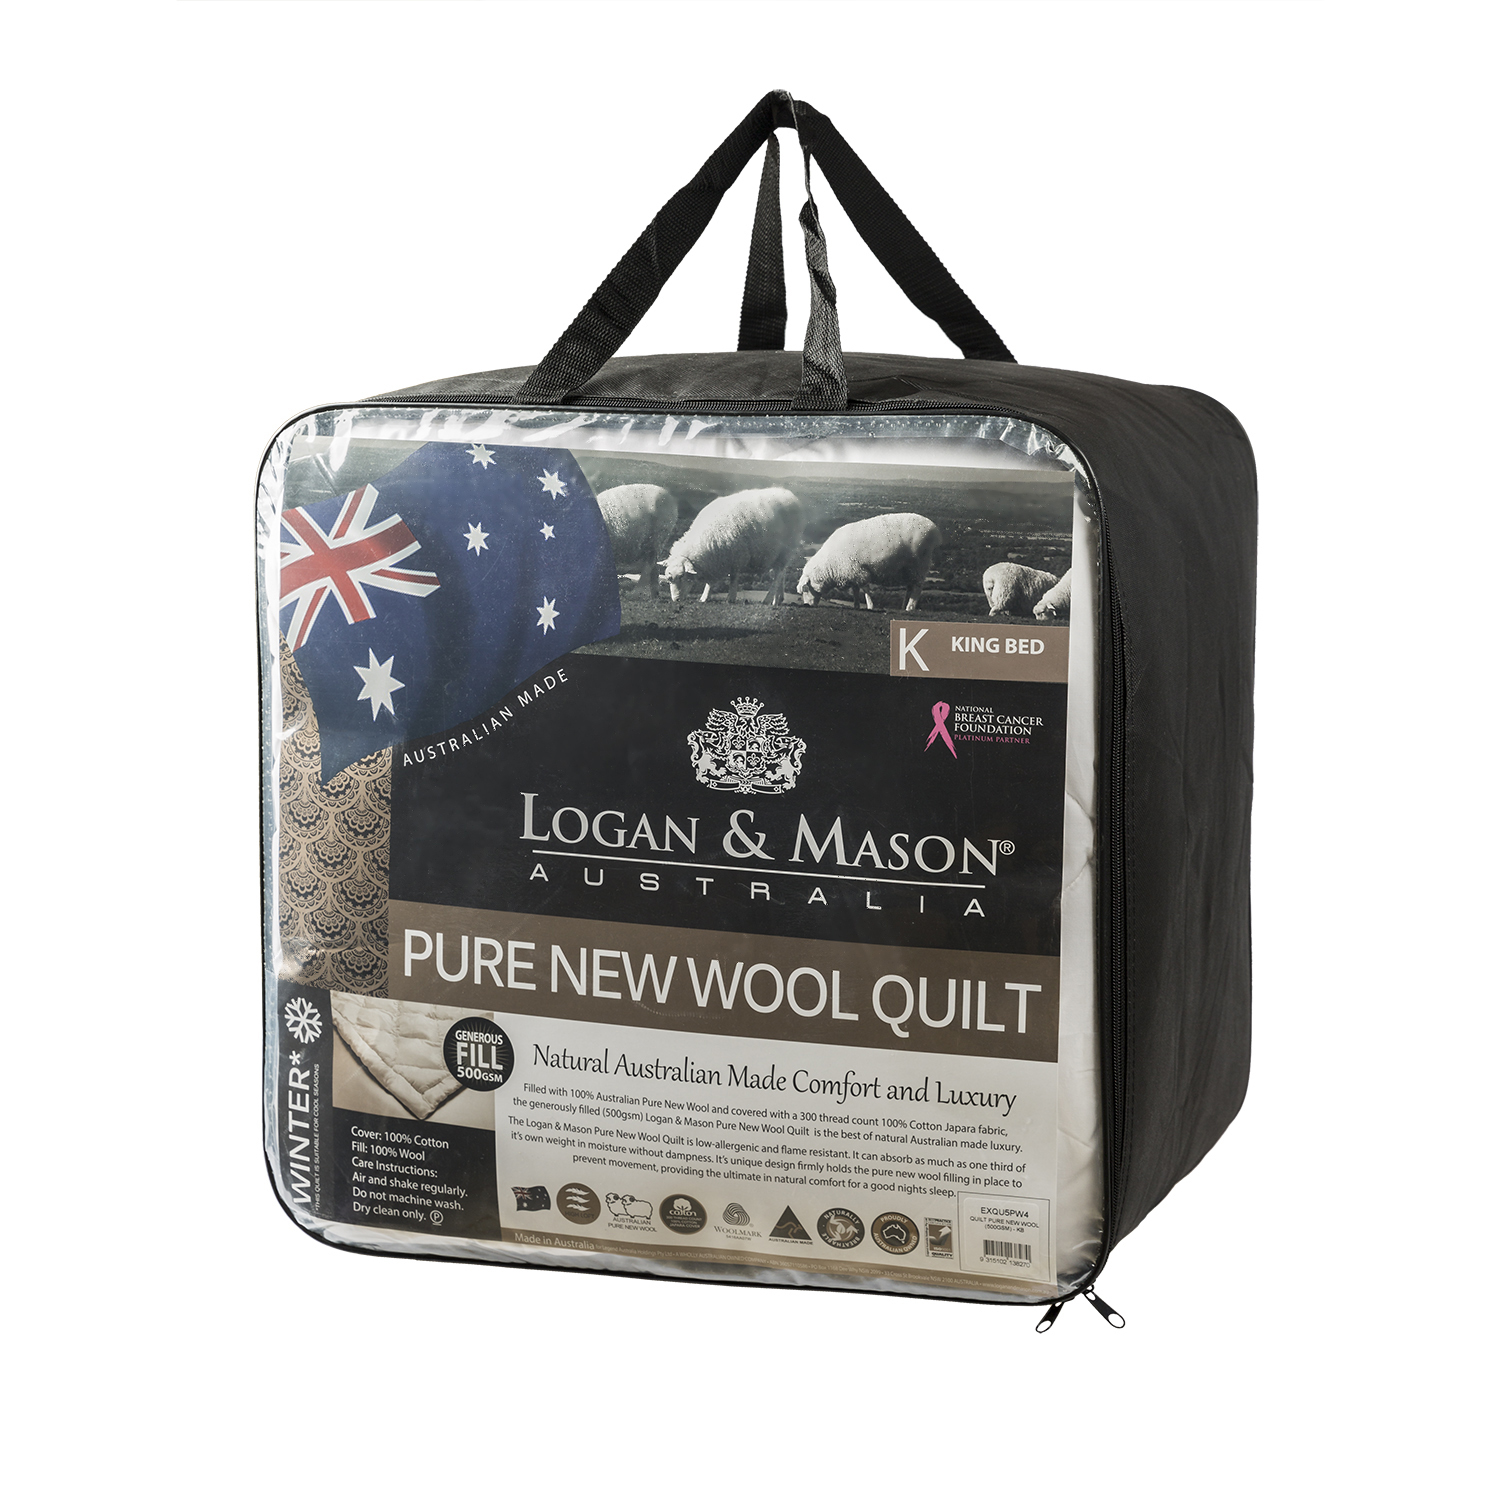 澳大利亚原产LOGAN & MASON纯羊毛冬被羊毛被子500gsm 白色 Single Bed单人：140cm x 210cm